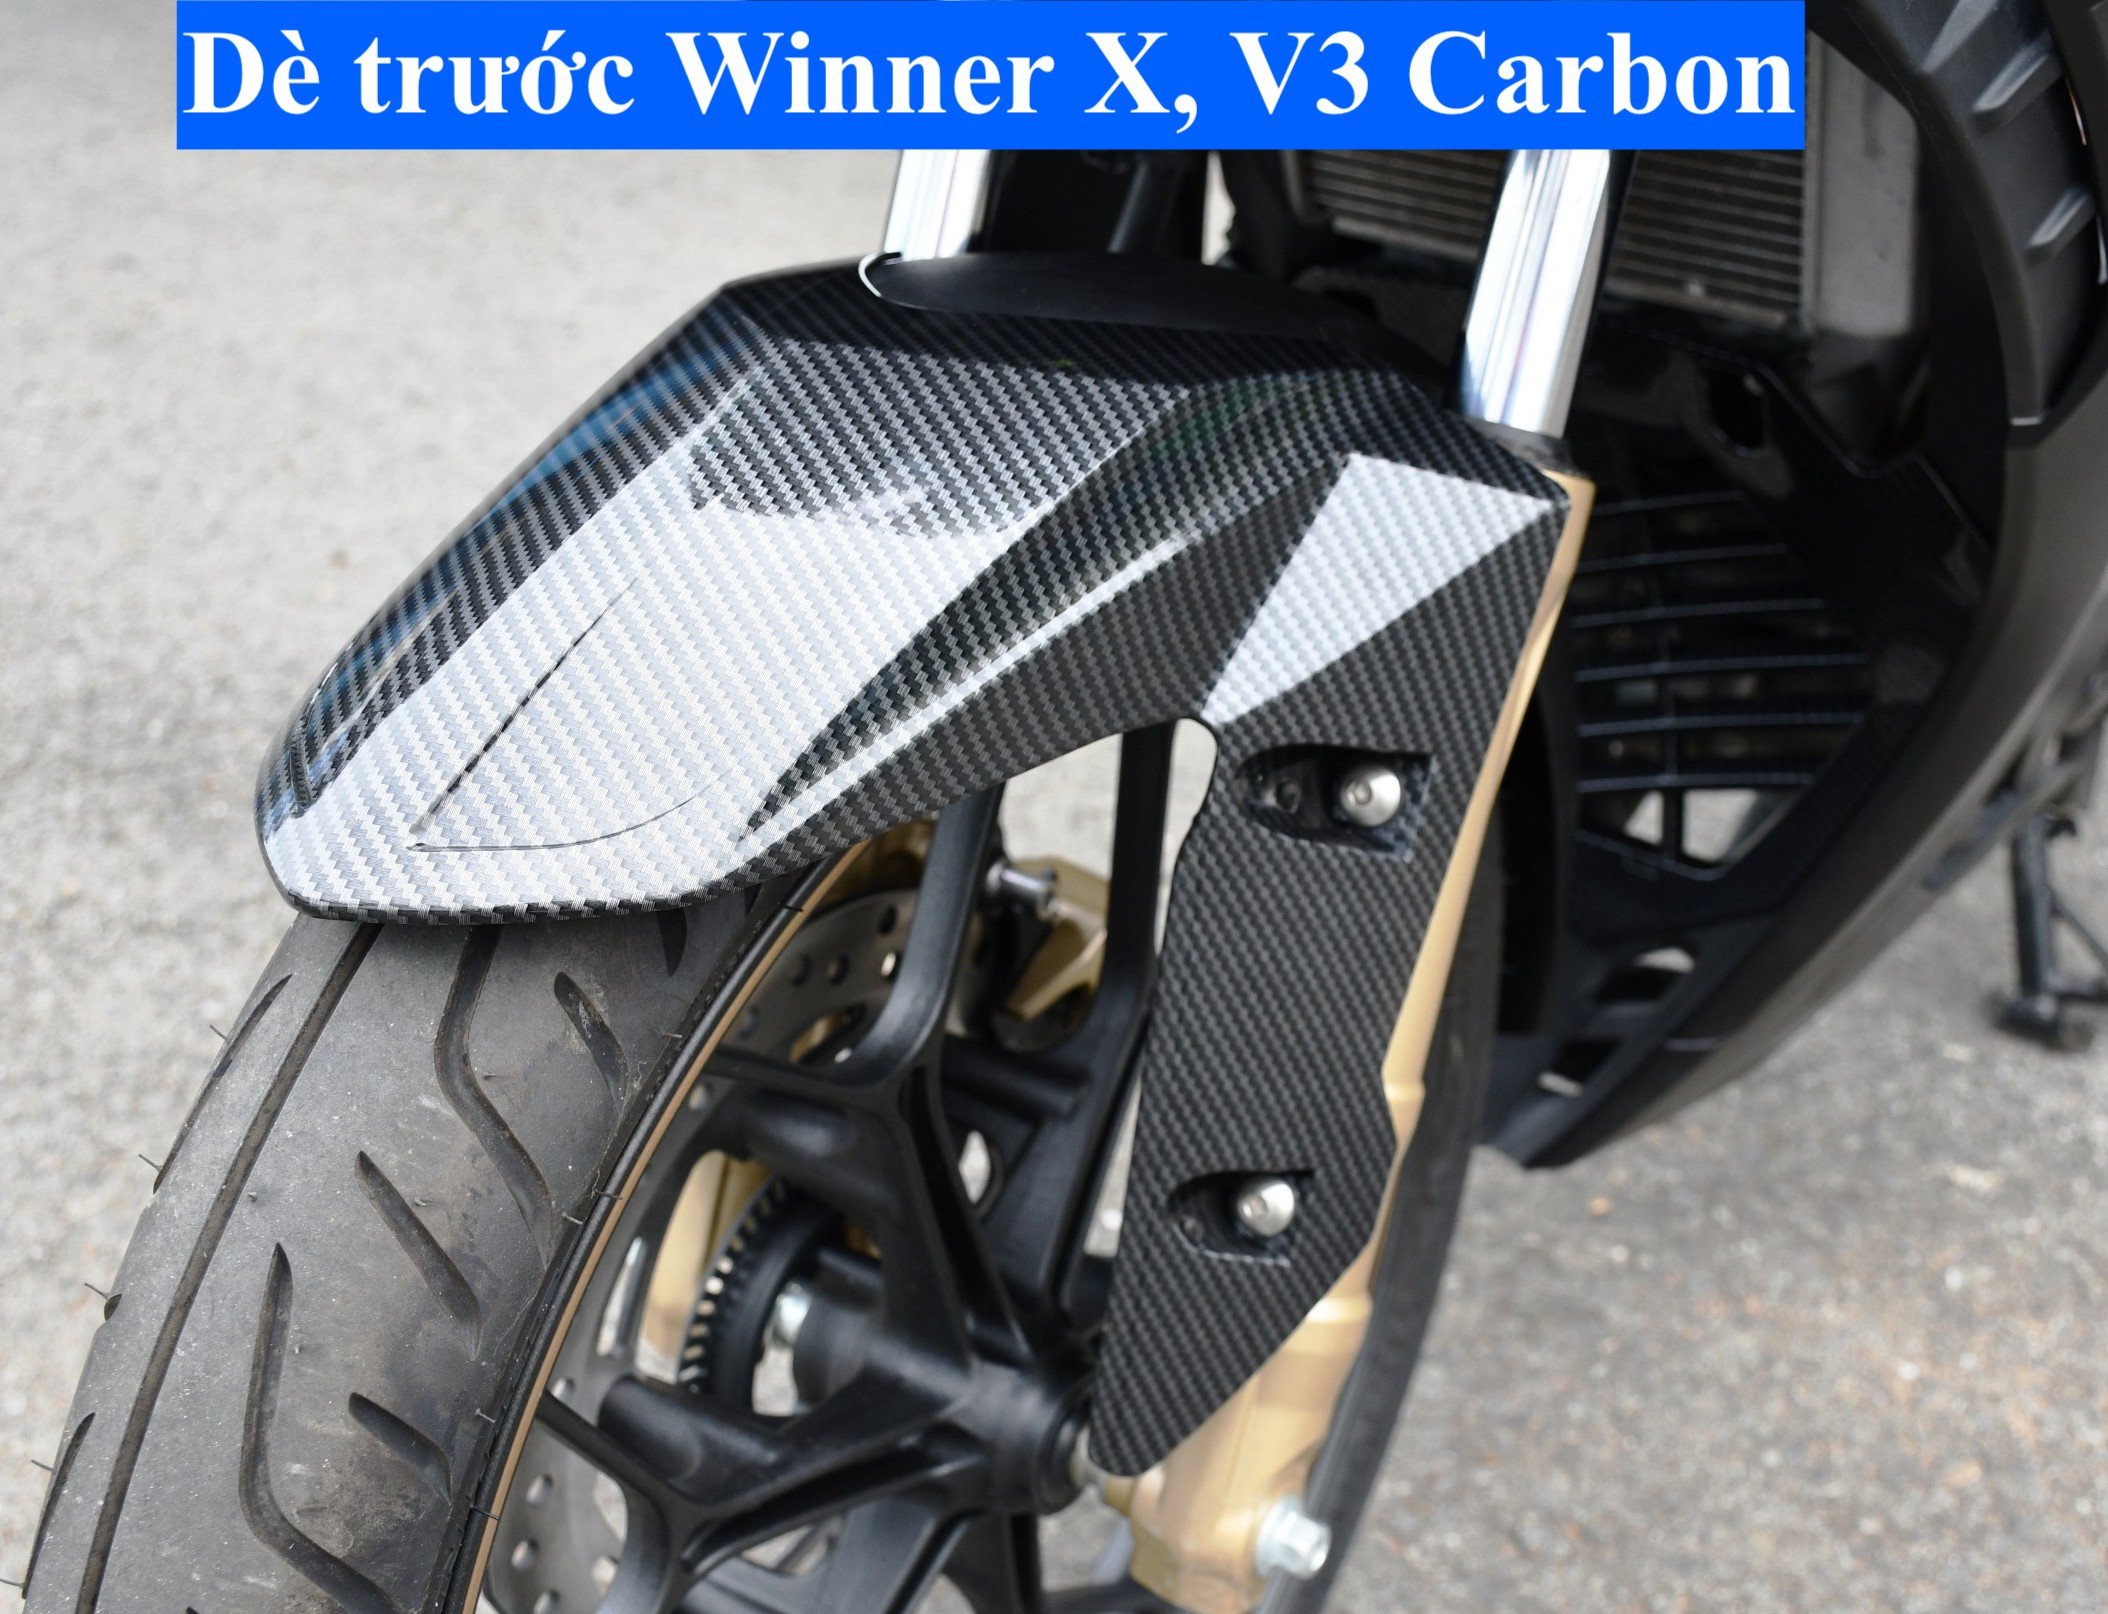 Dè trước dành cho Winner X, V3 Carbon